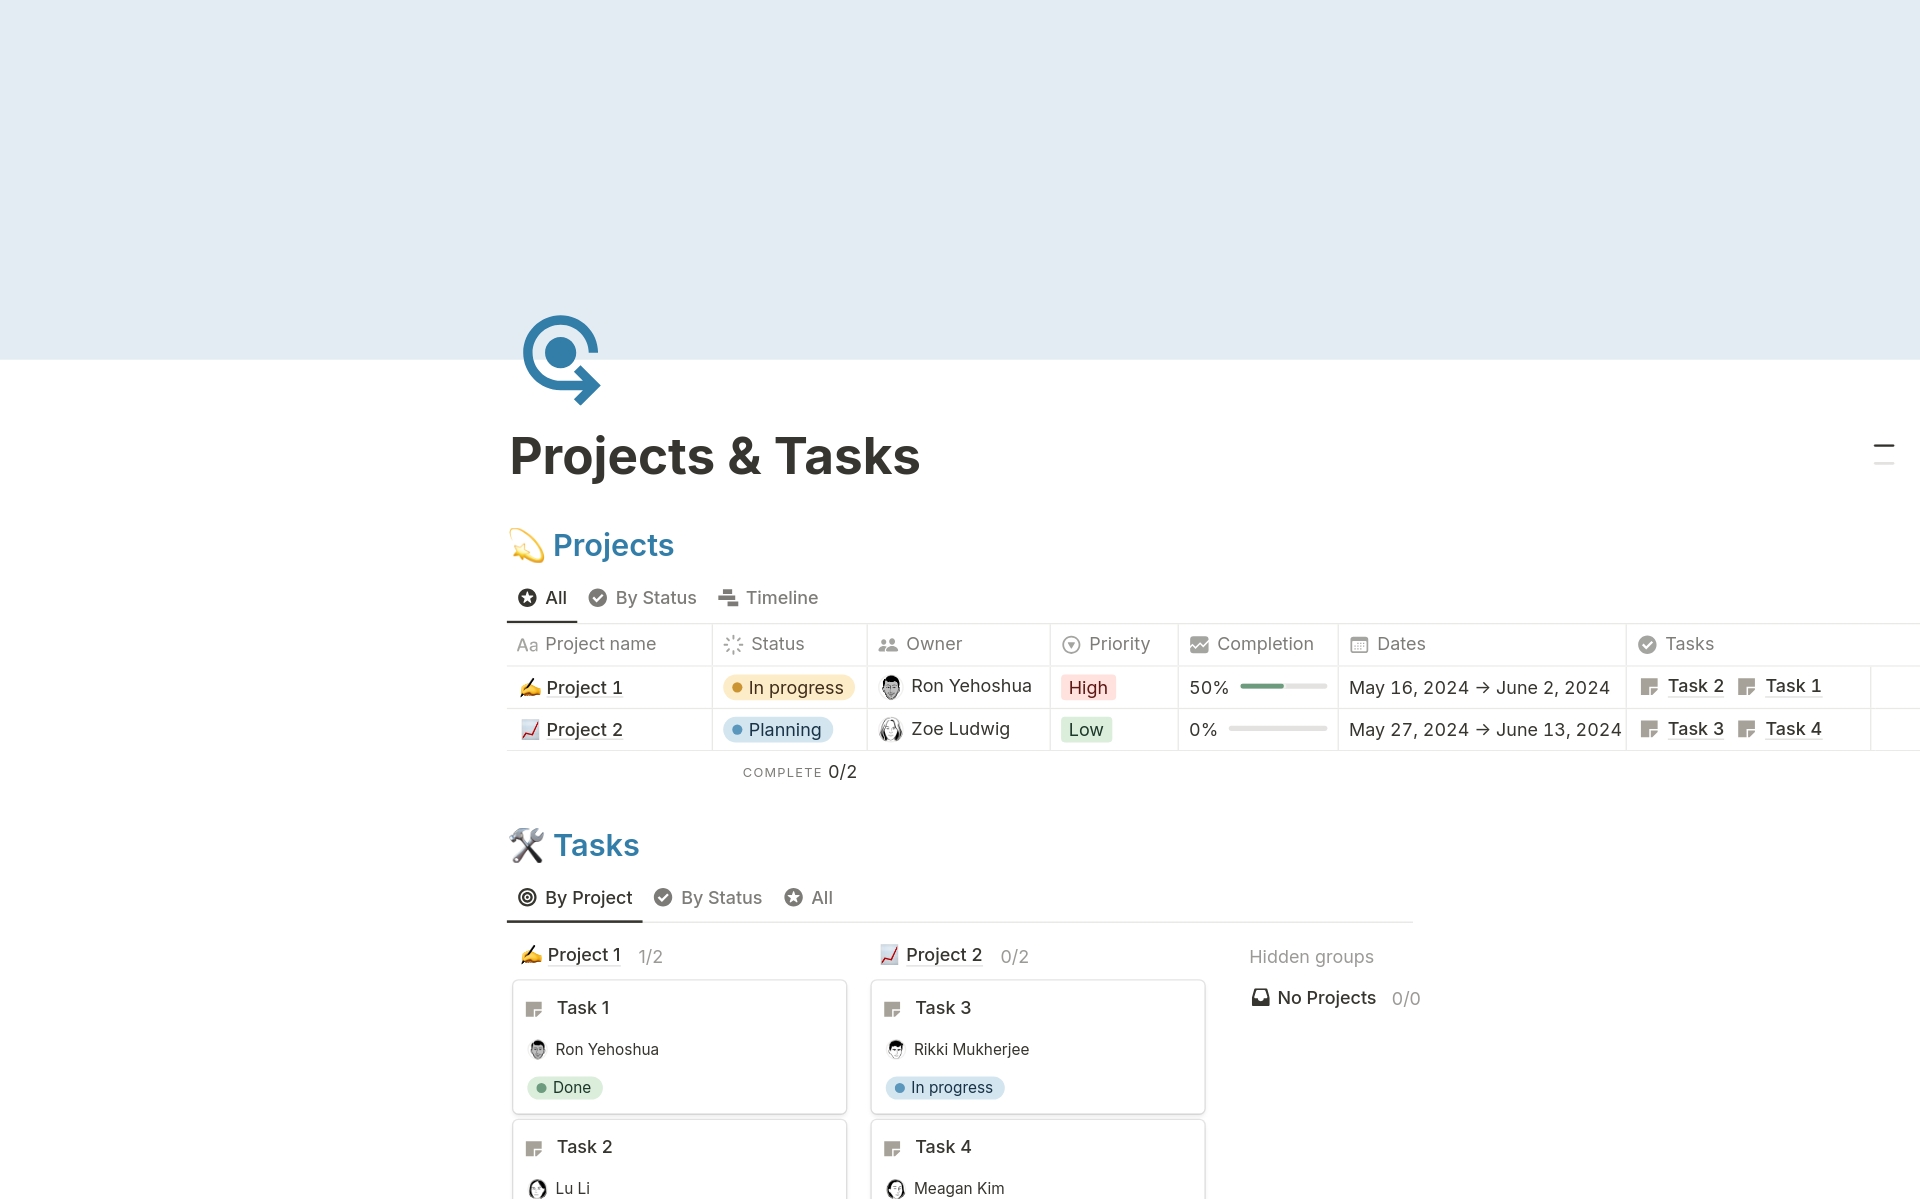 Vista previa de una plantilla para Projects & Tasks